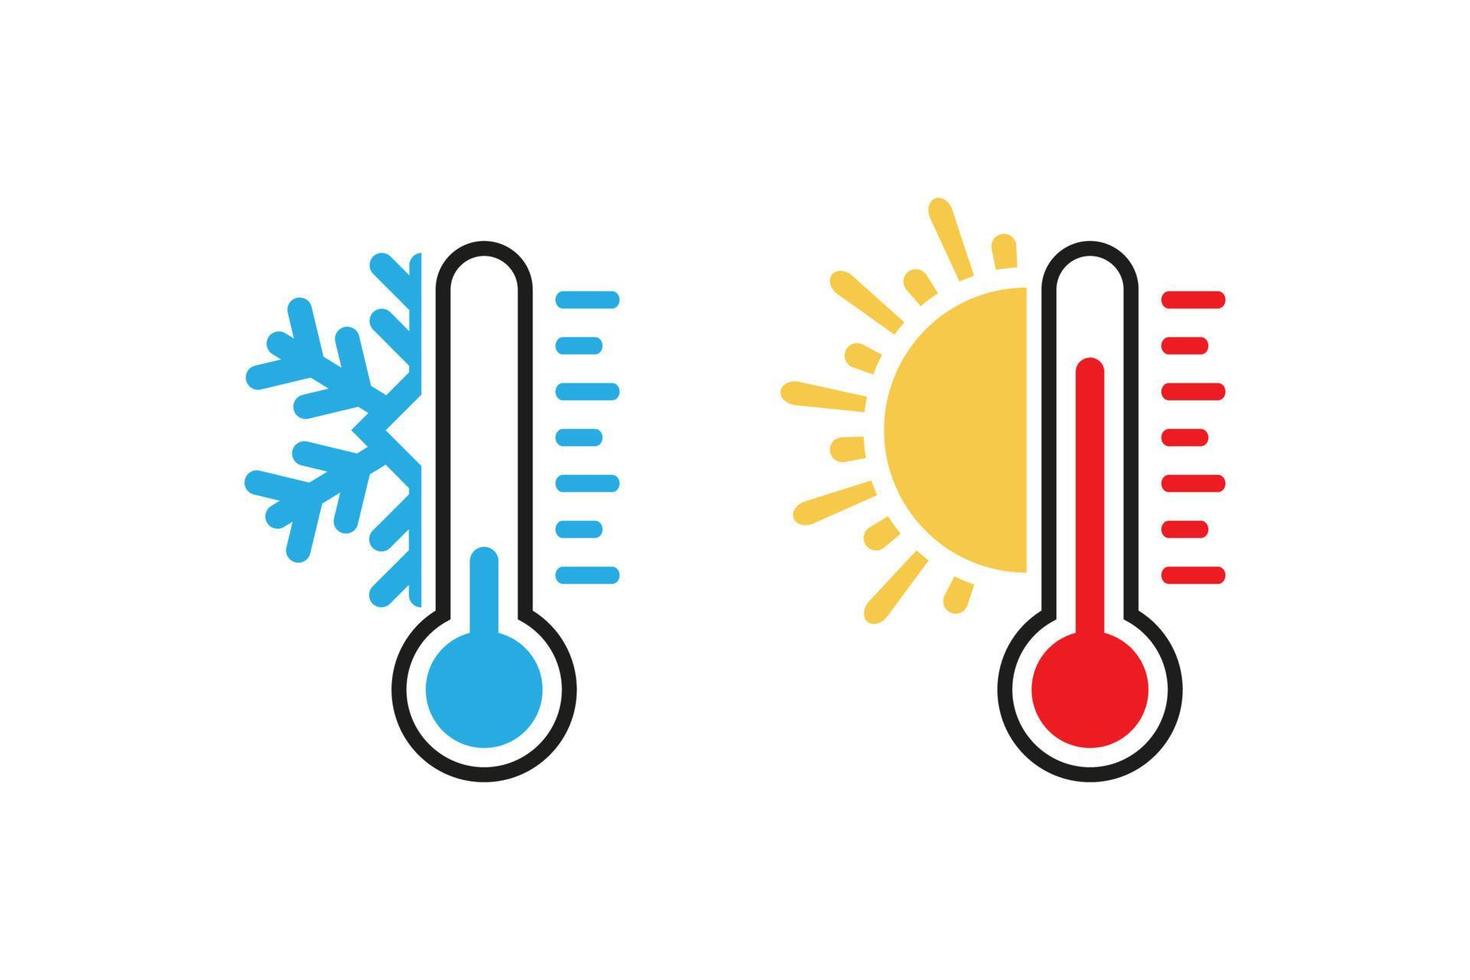 två termometer visar kyla och värme. vektor i platt design